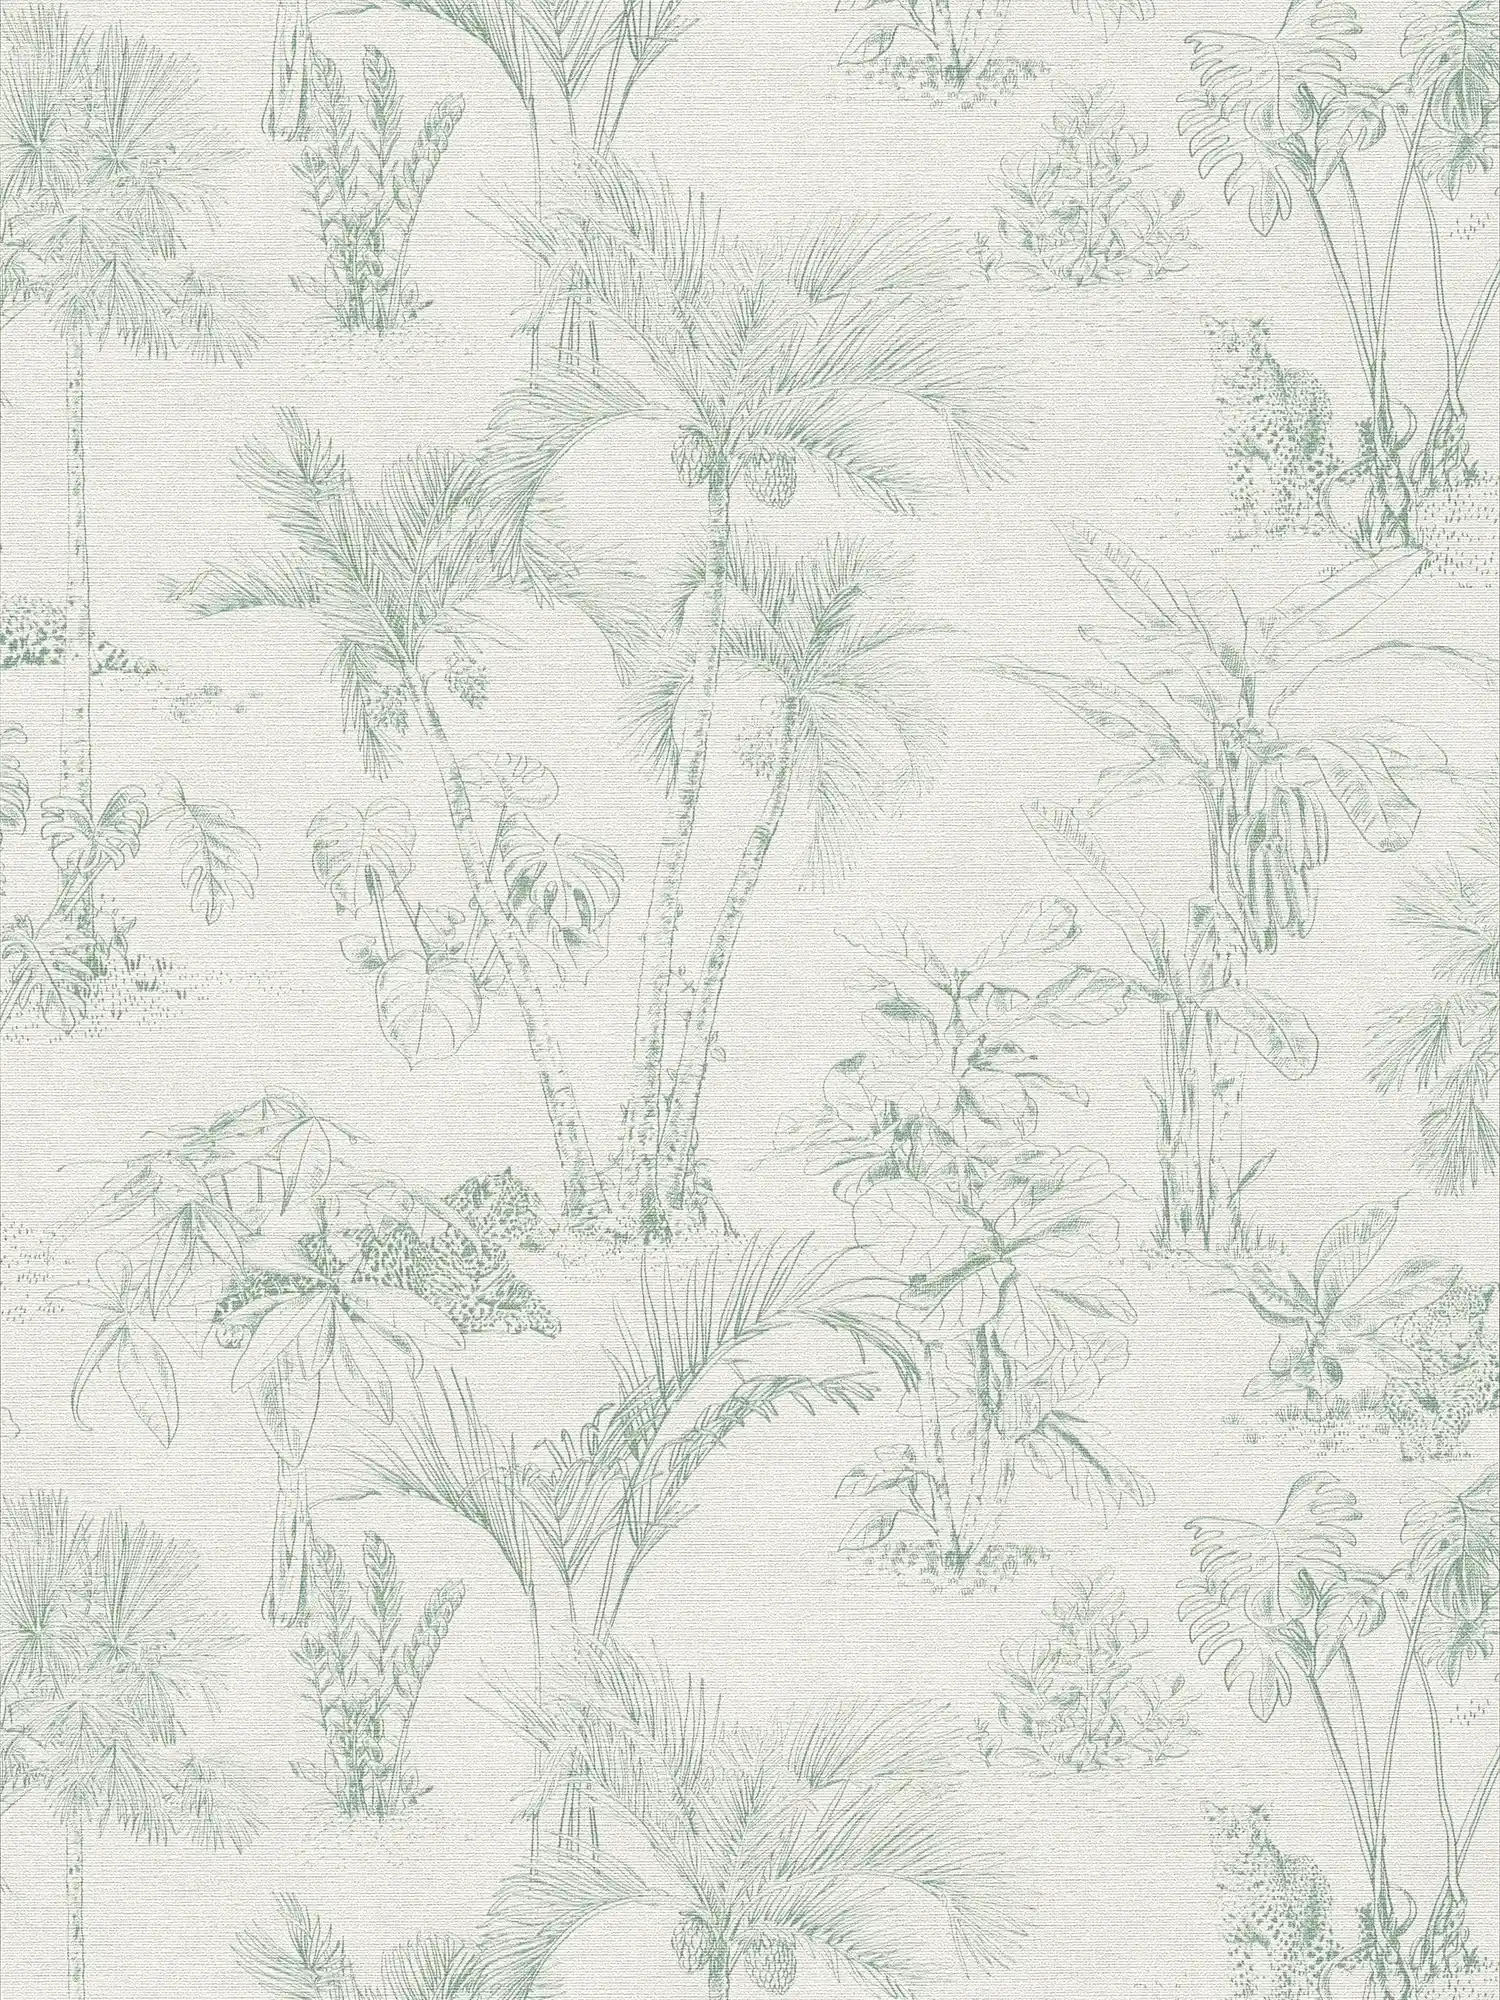 Papier peint aspect lin Design jungle avec palmiers - gris, vert
